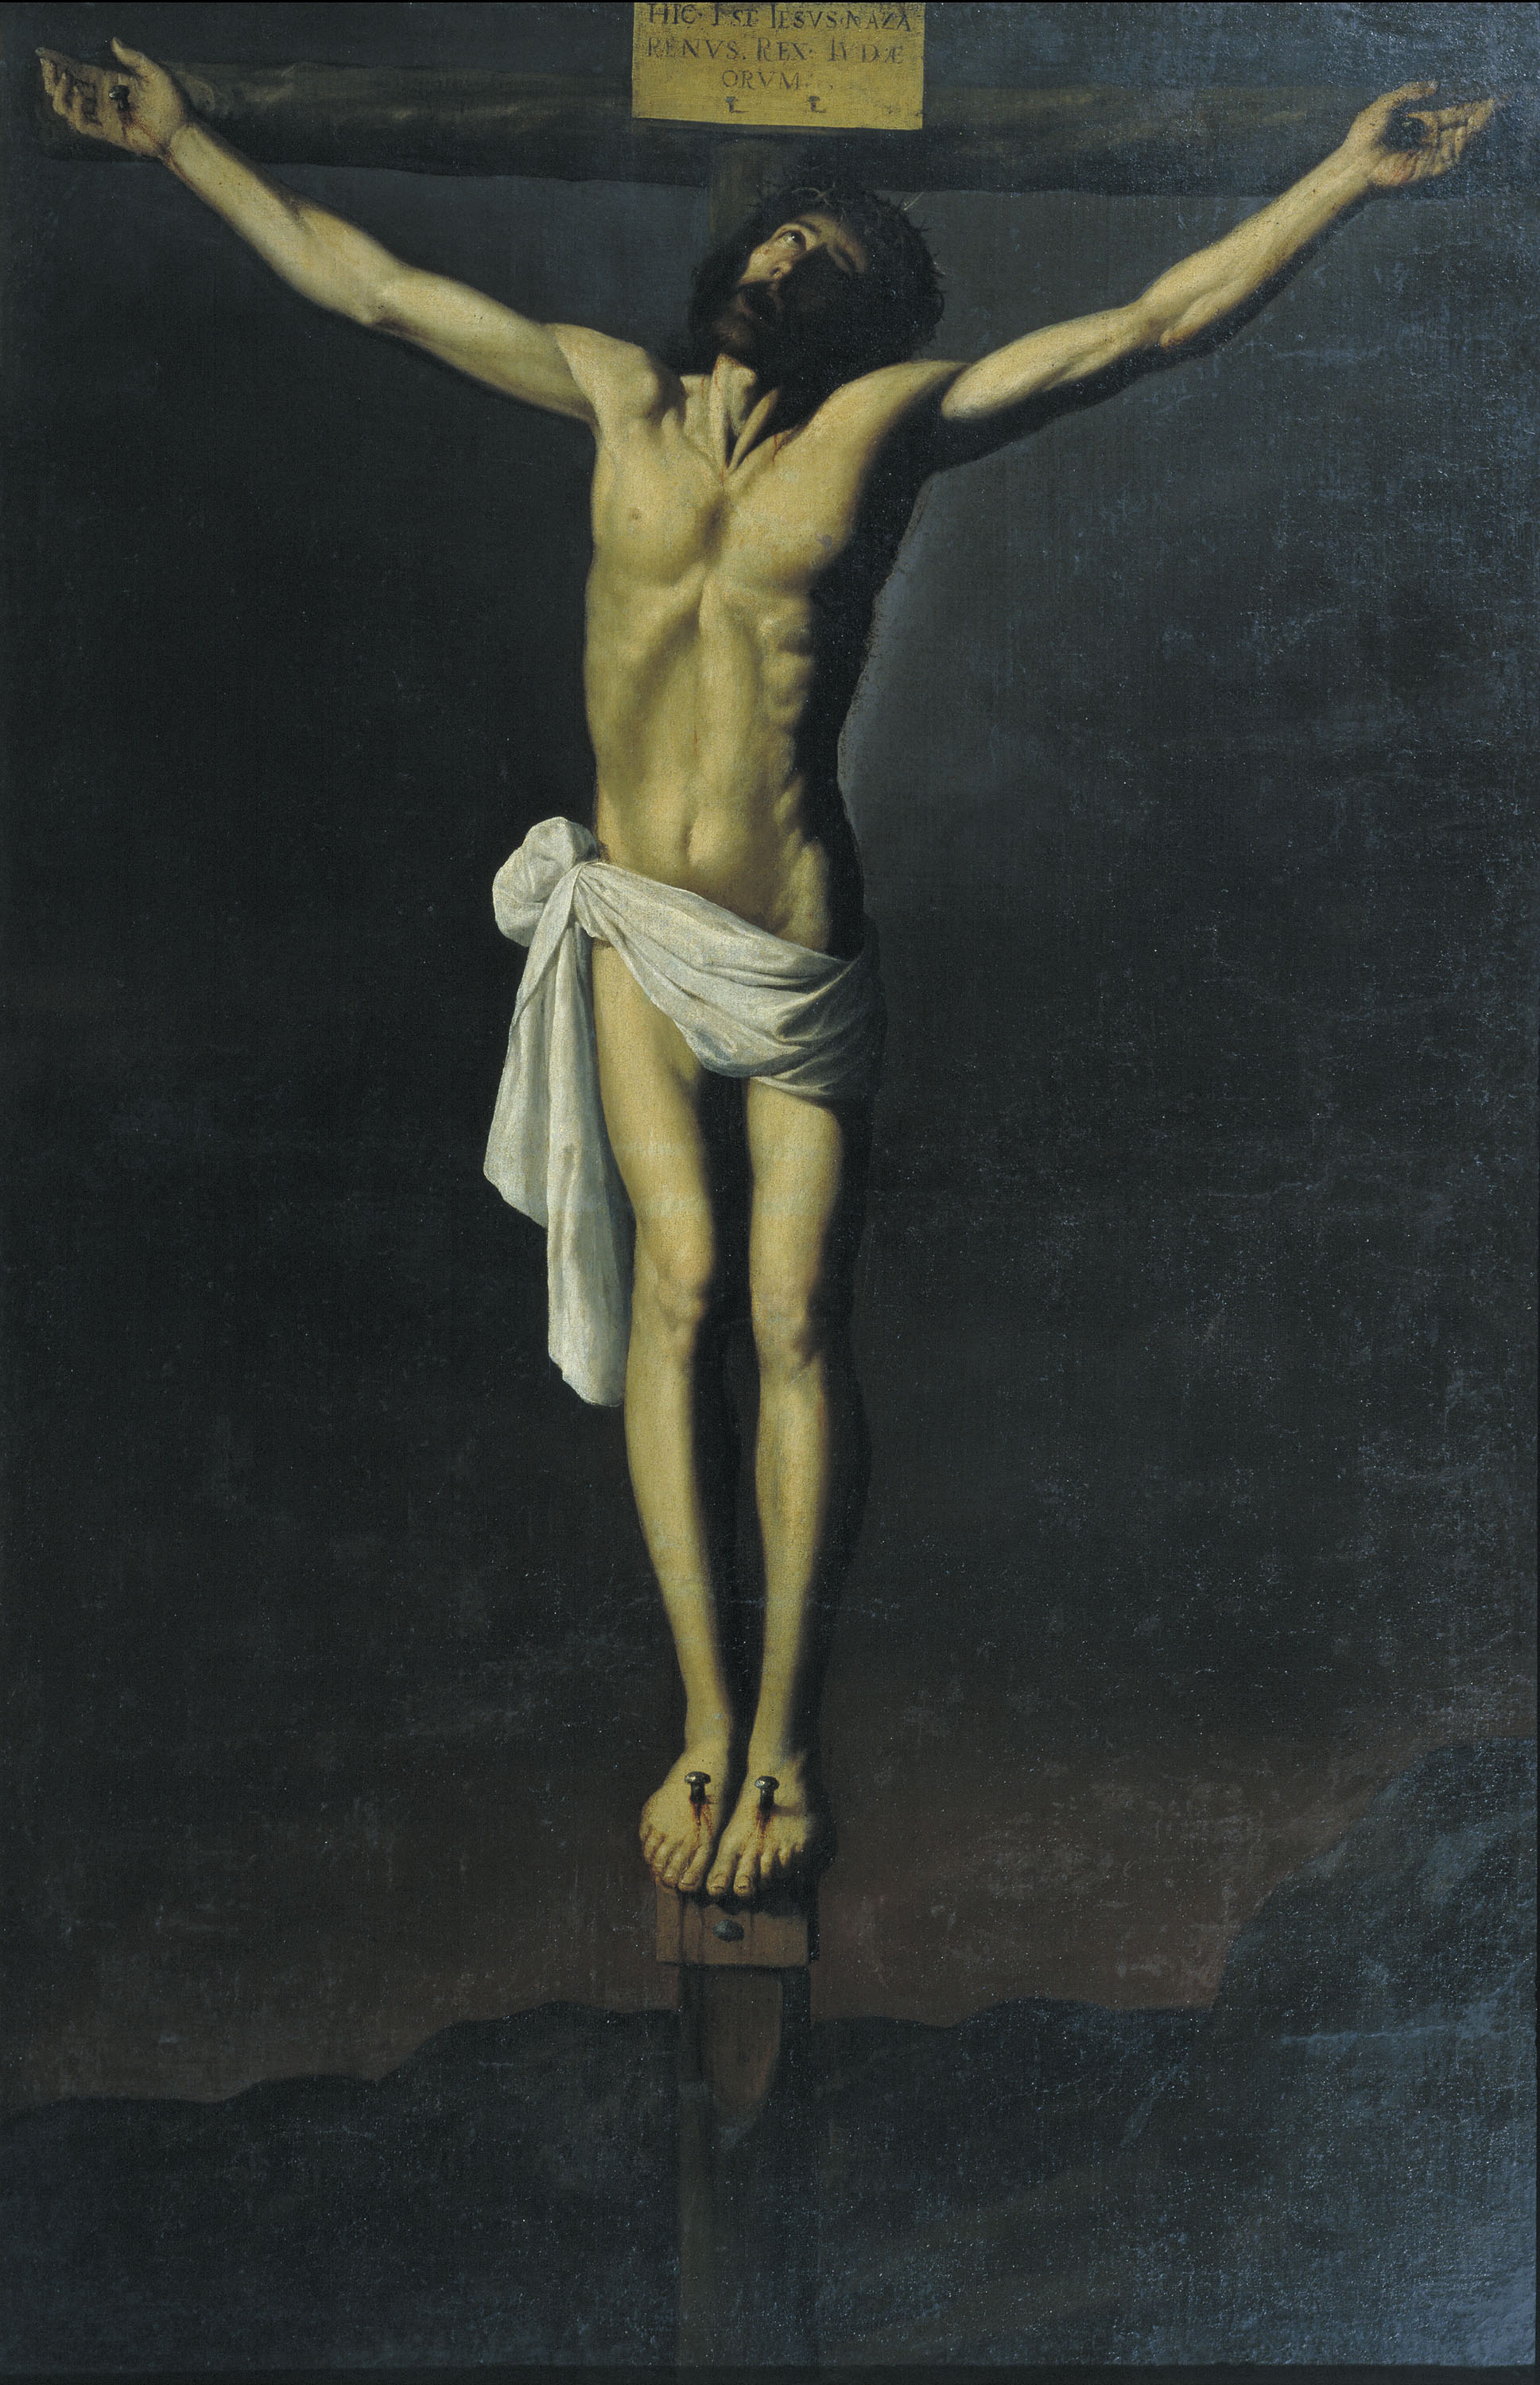 Francisco de Zurbarán, Crist crucificat, cap a 1655